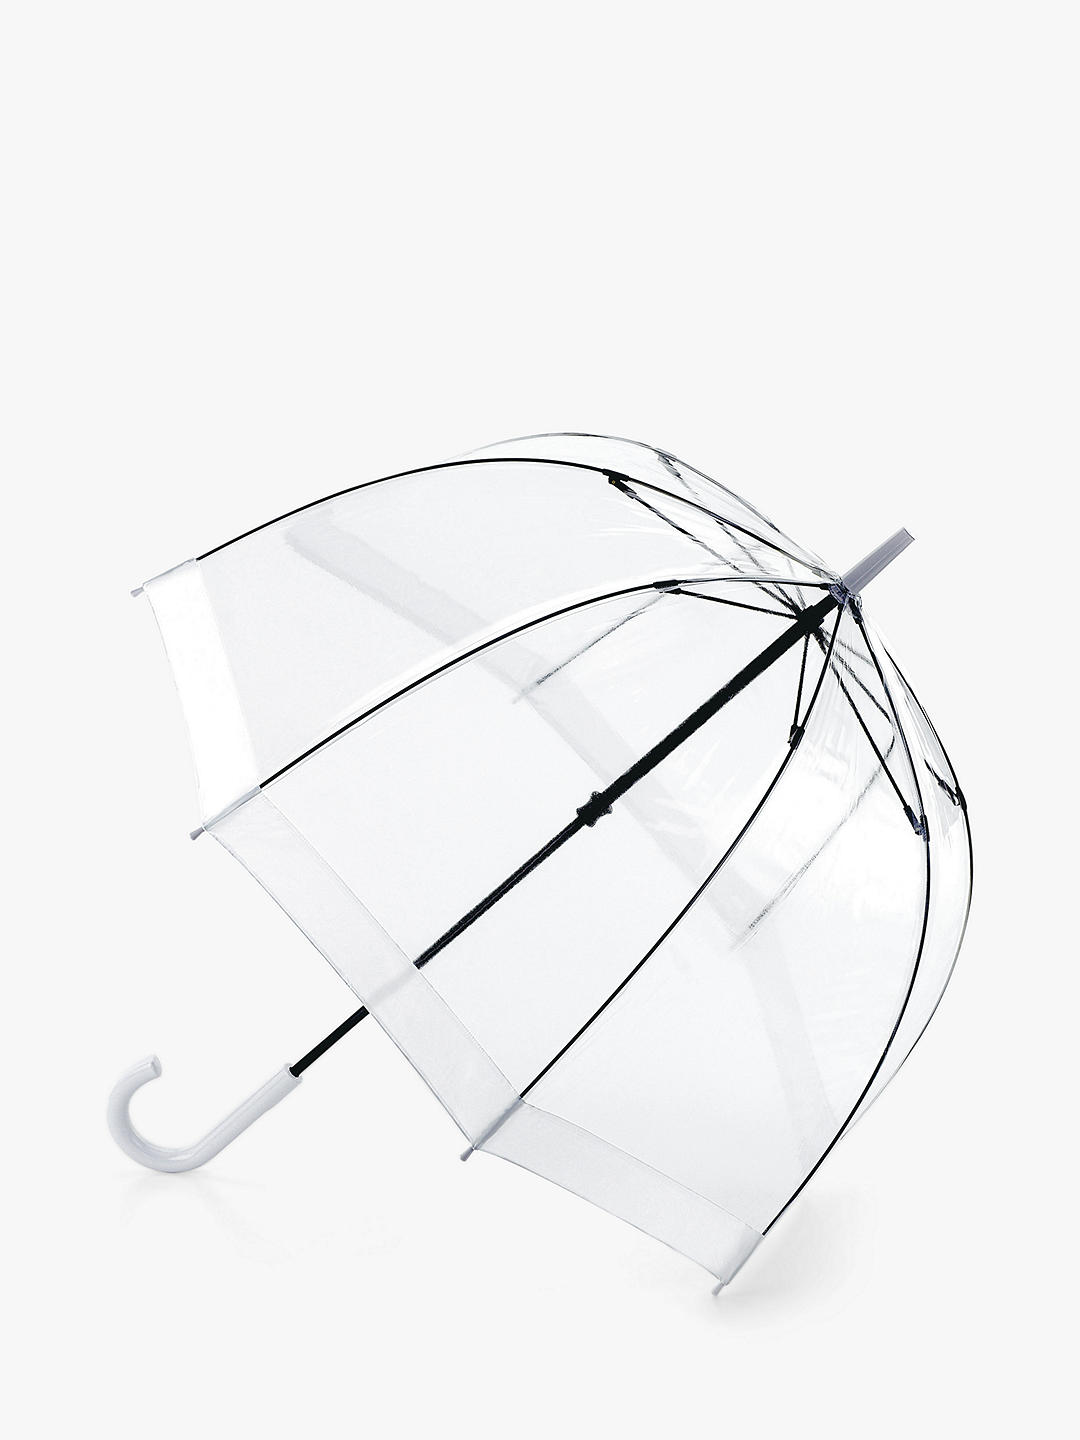 Fulton L041 Birdcage Domed Umbrella, White